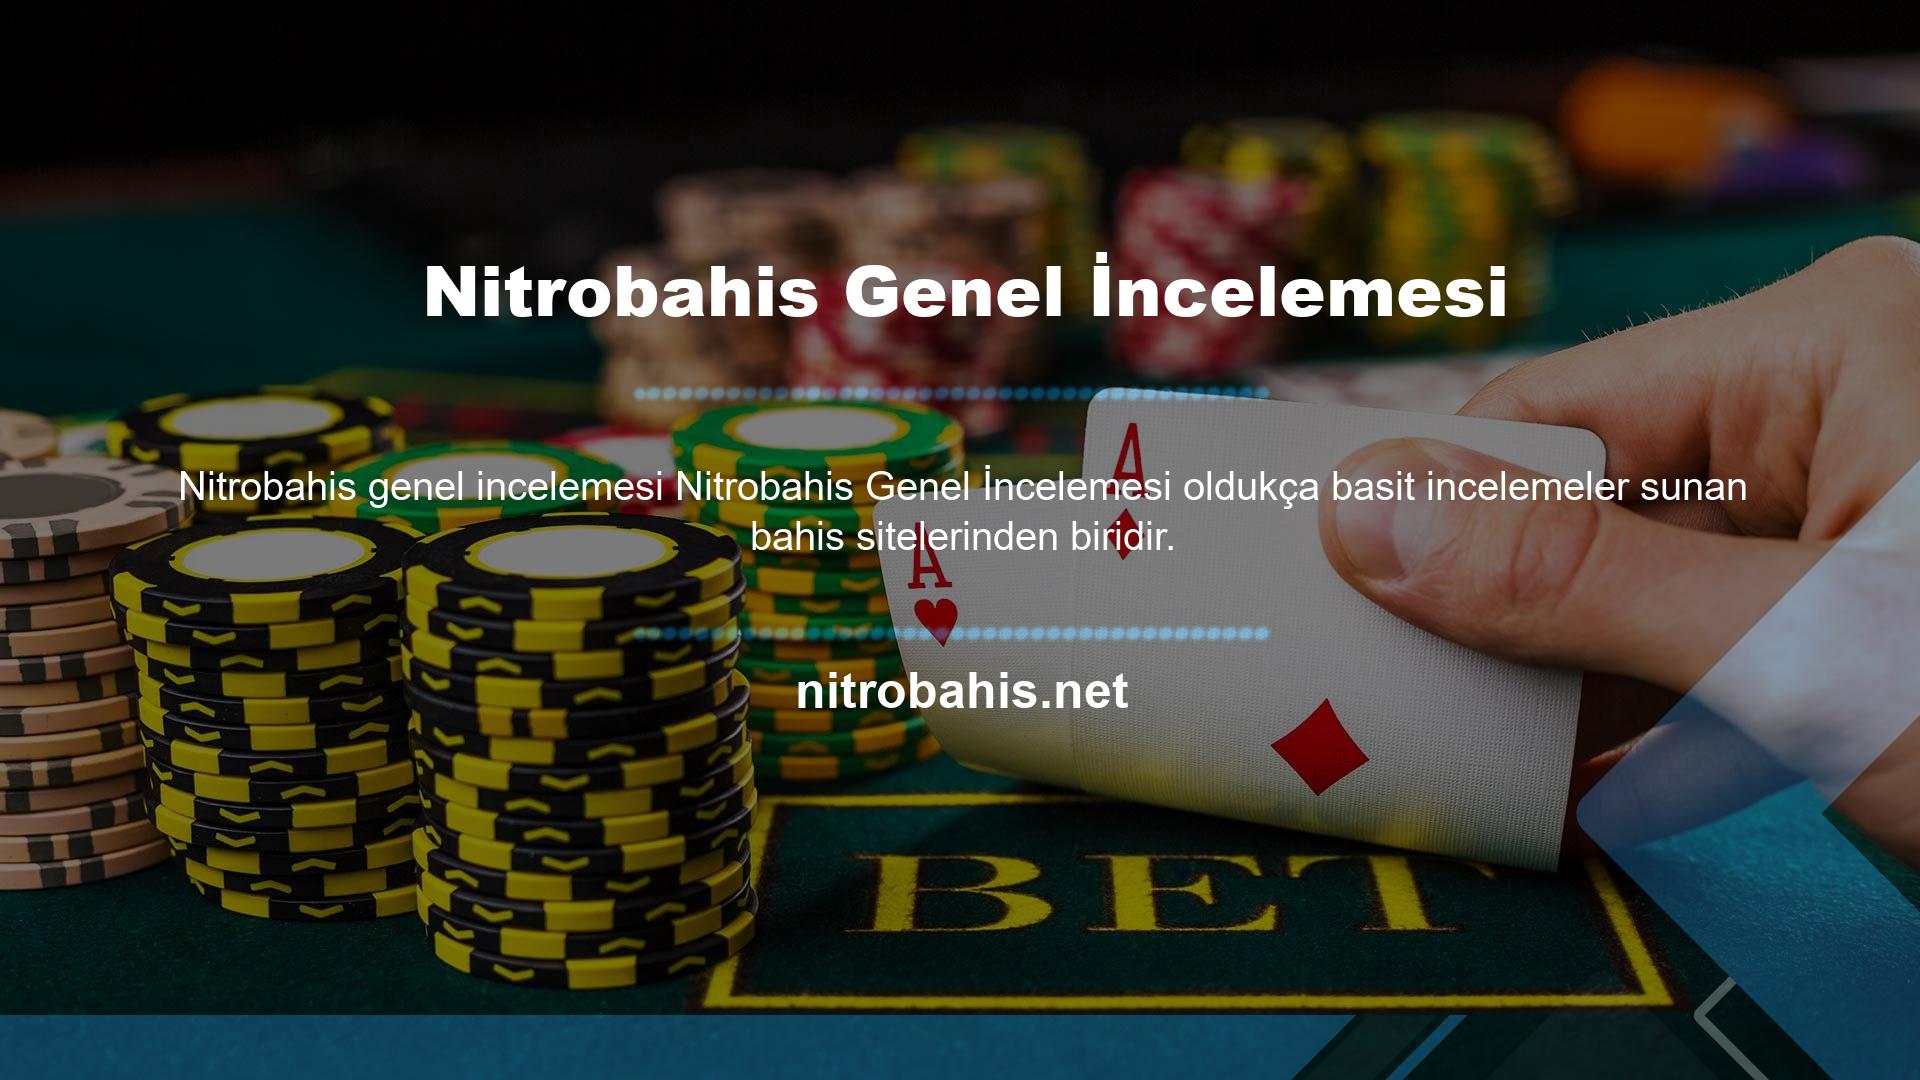 Nitrobahis web sitesi tüm bilgileri şeffaf bir şekilde üyeleriyle paylaşmaktadır